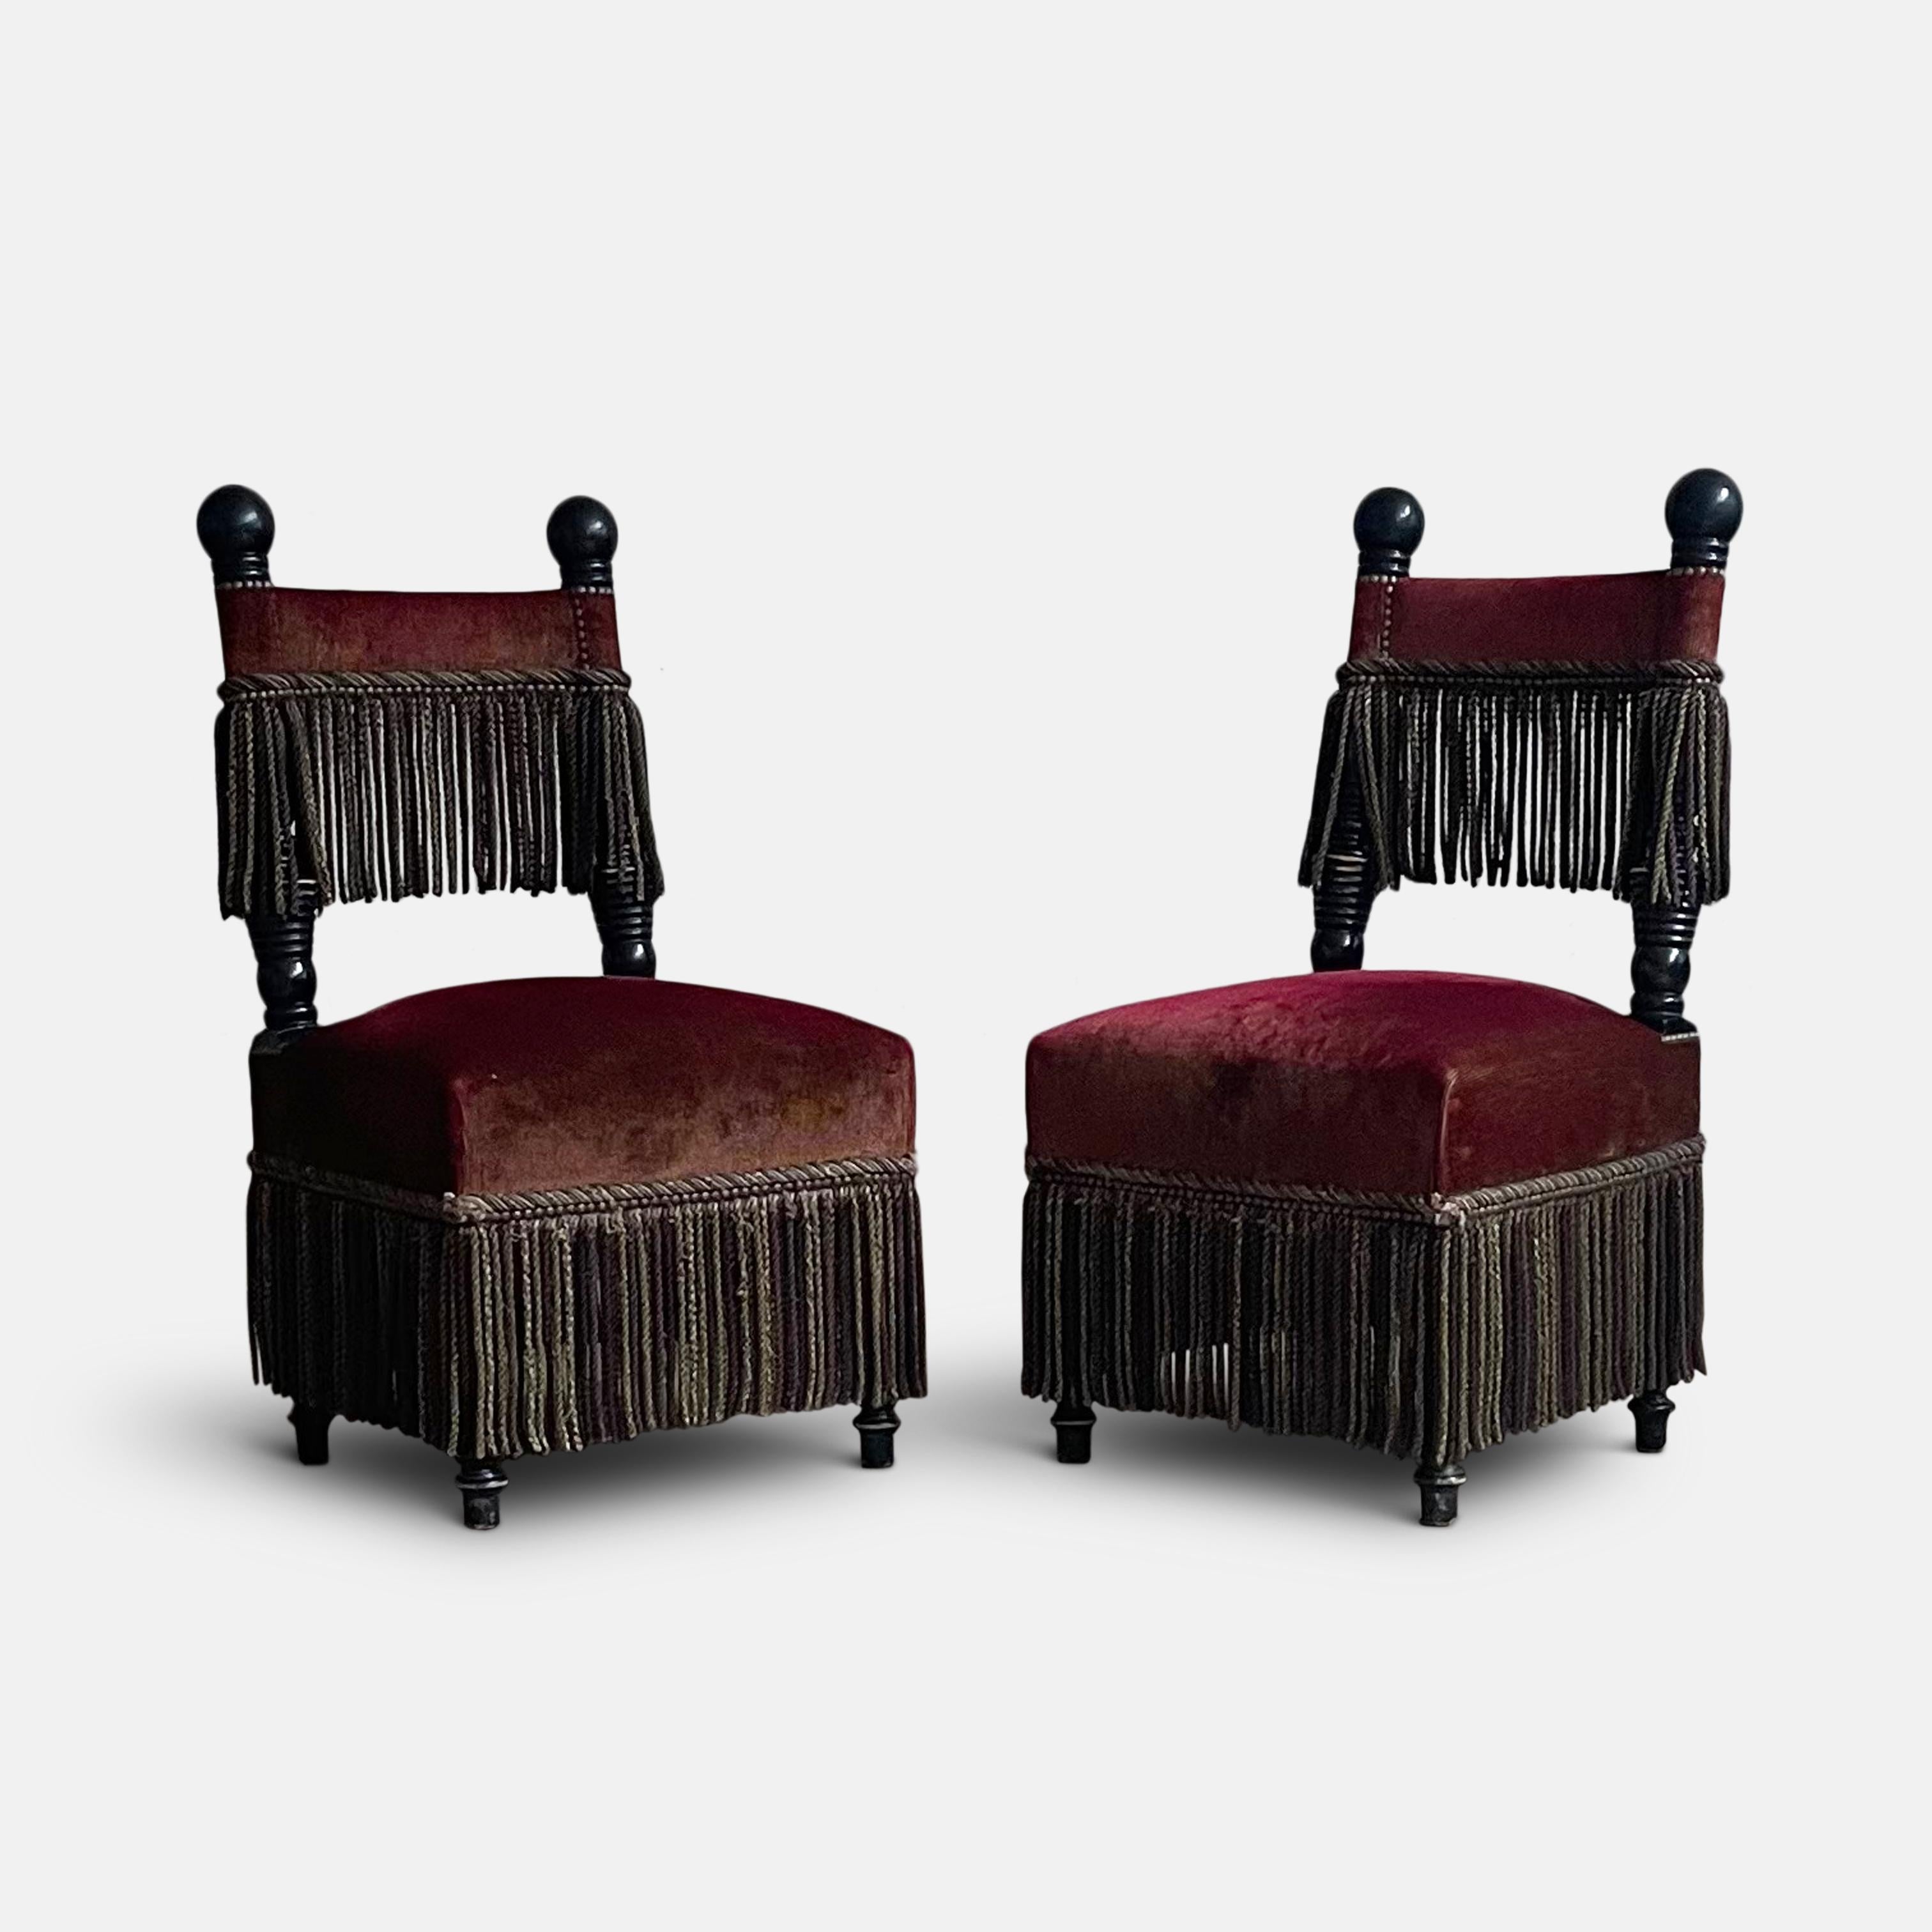 Conçues par Roxanne Rodriguez pour la pâtisserie Ladurée, à Paris, ces chaises ont pris place dans la salle à manger du Salon Paeva, sur l'avenue des Champs-Élysées.
S'inspirant de la riche histoire des intérieurs historiques et des arts décoratifs